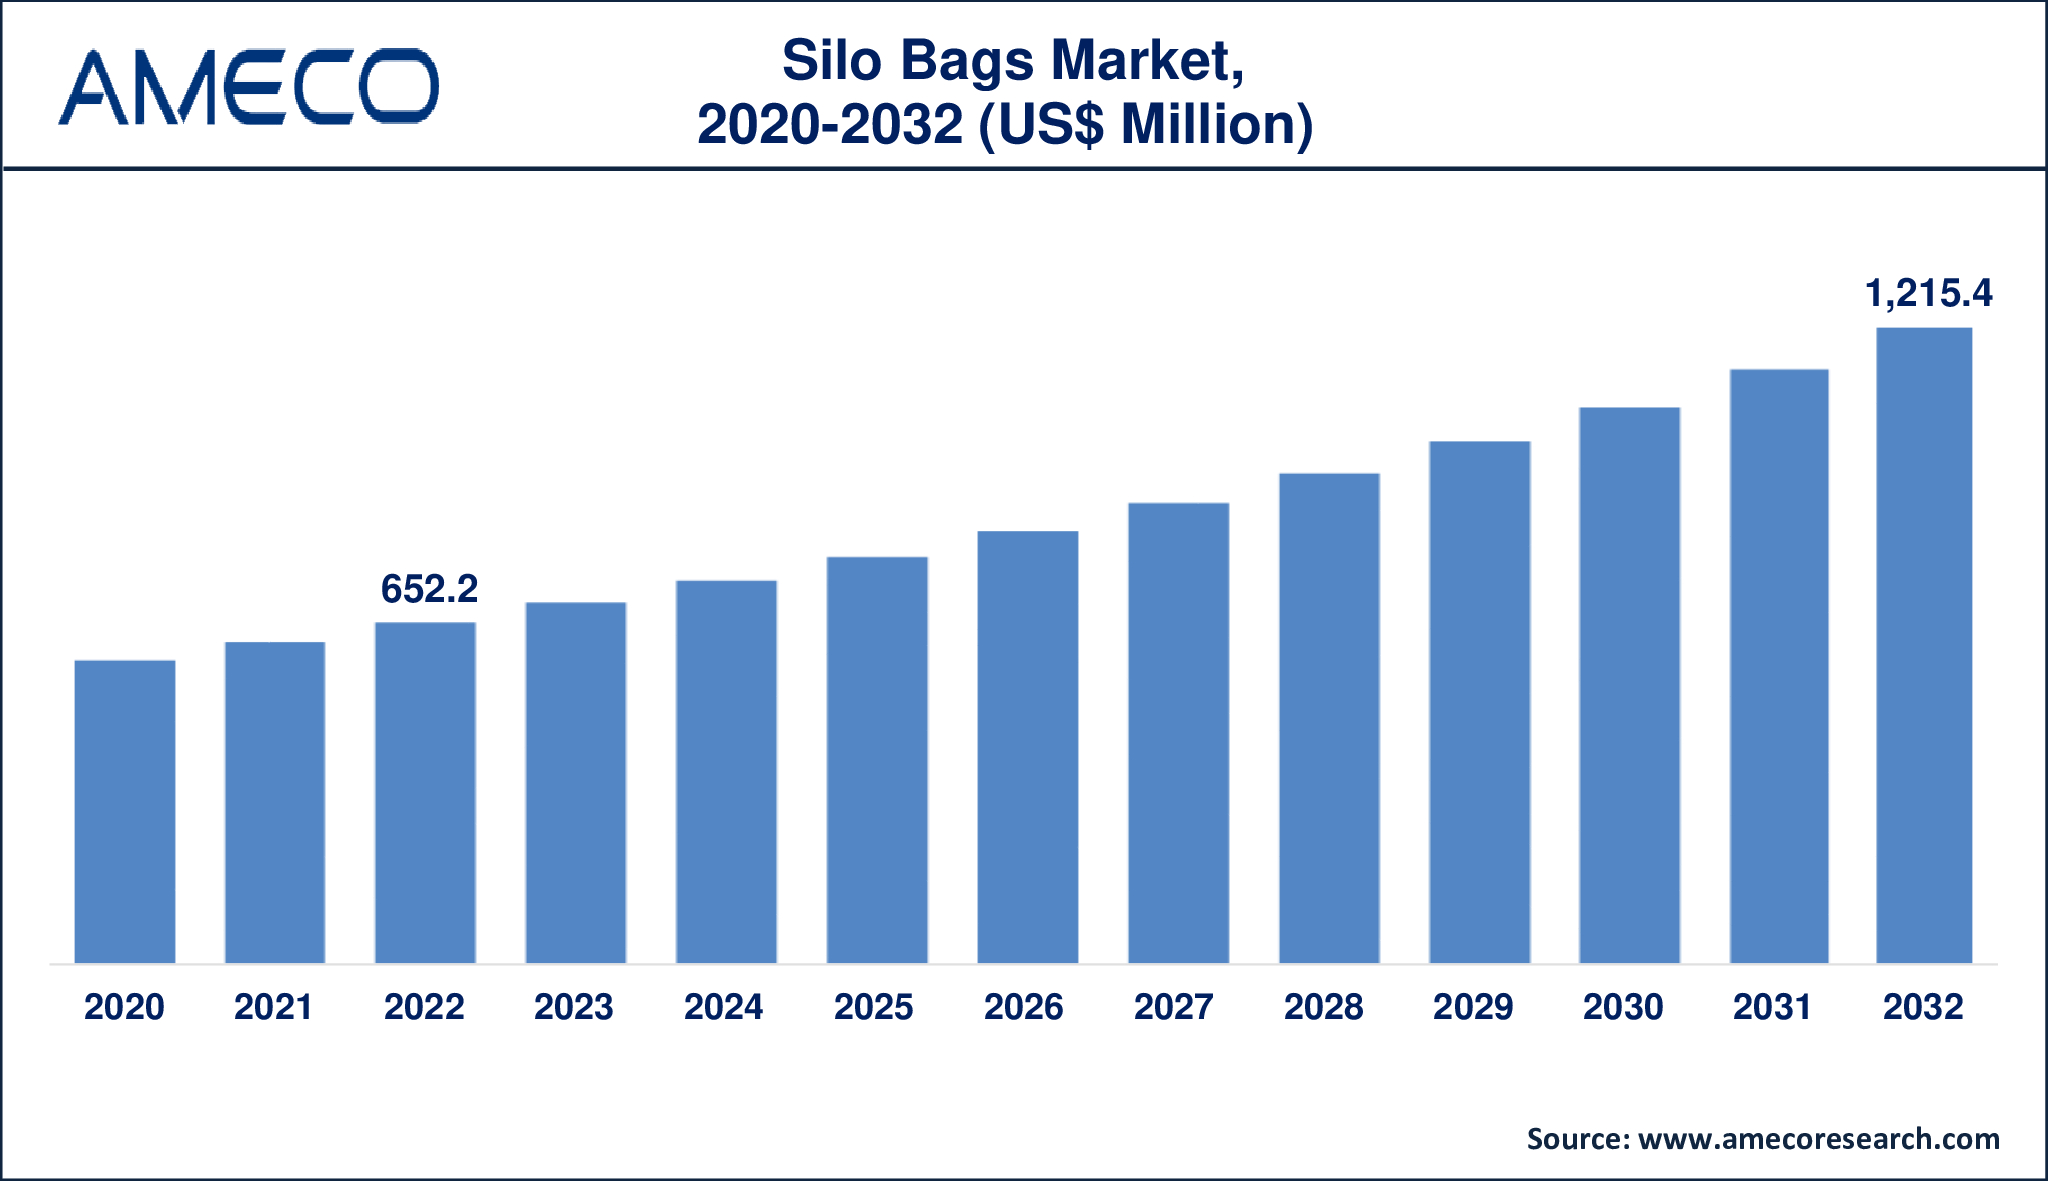 Silo Bags Market Dynamics